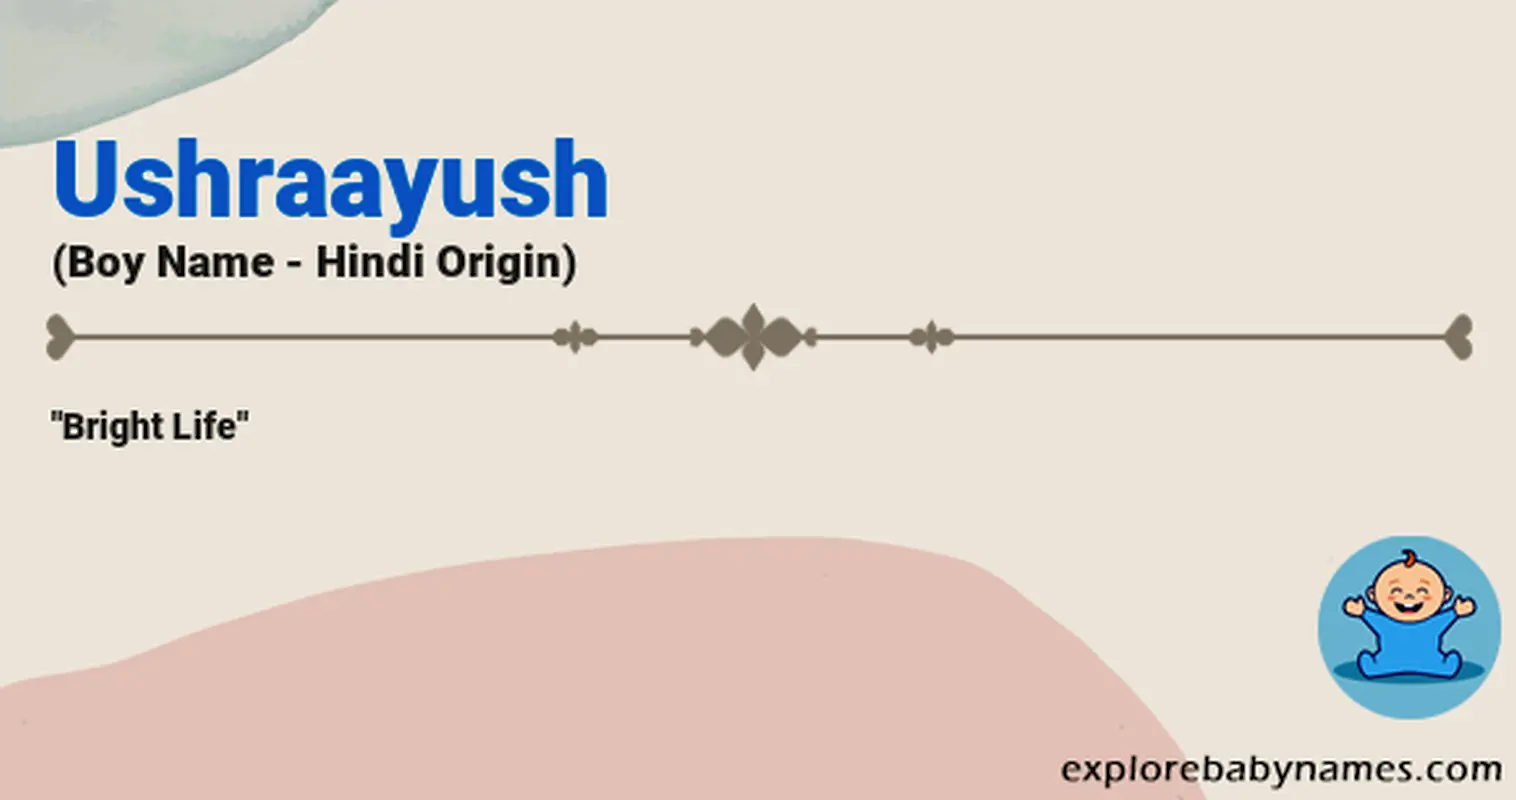 Meaning of Ushraayush